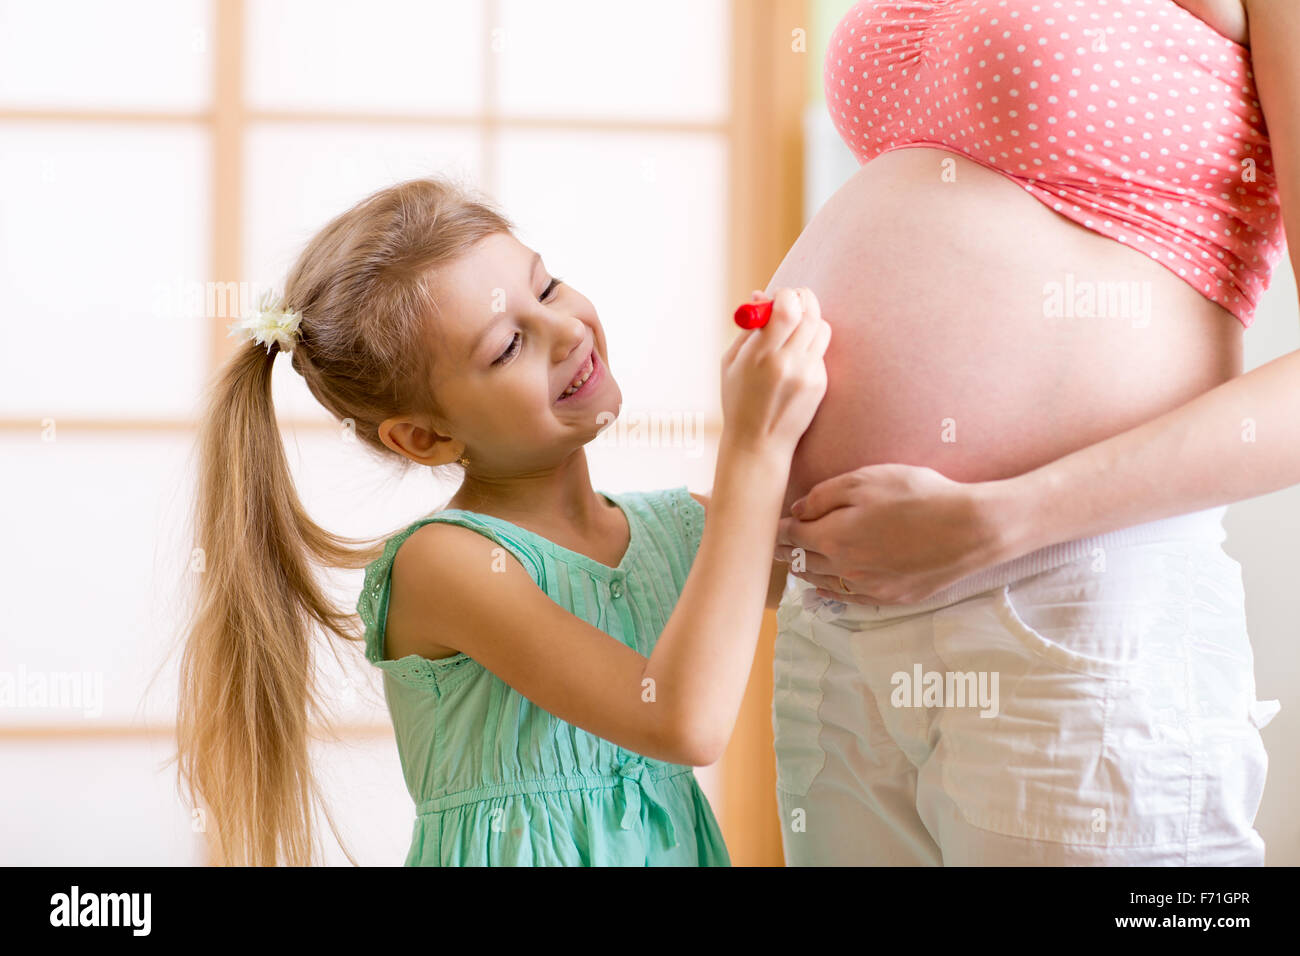 Kind-Tochter Malerei auf Bauch der schwangeren Mutter Stockfoto